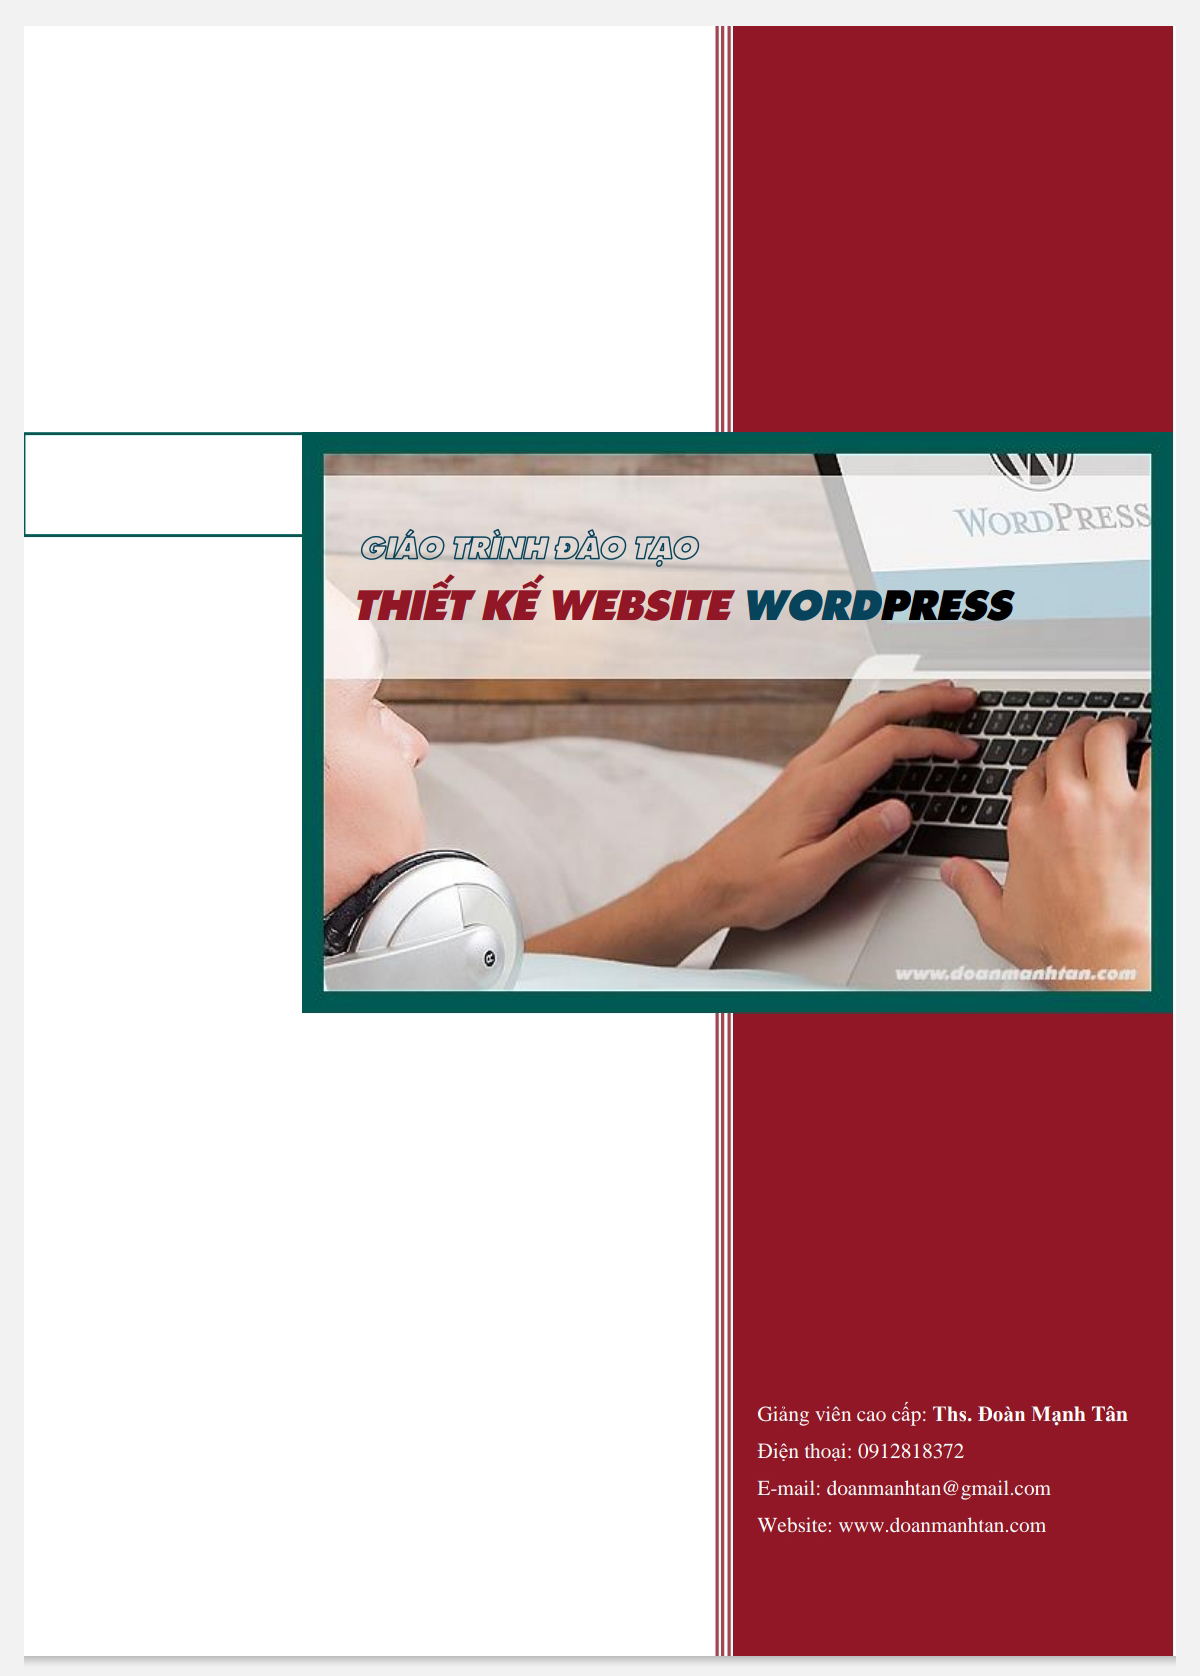 Giáo trình đào tạo thiết kế website wordpress